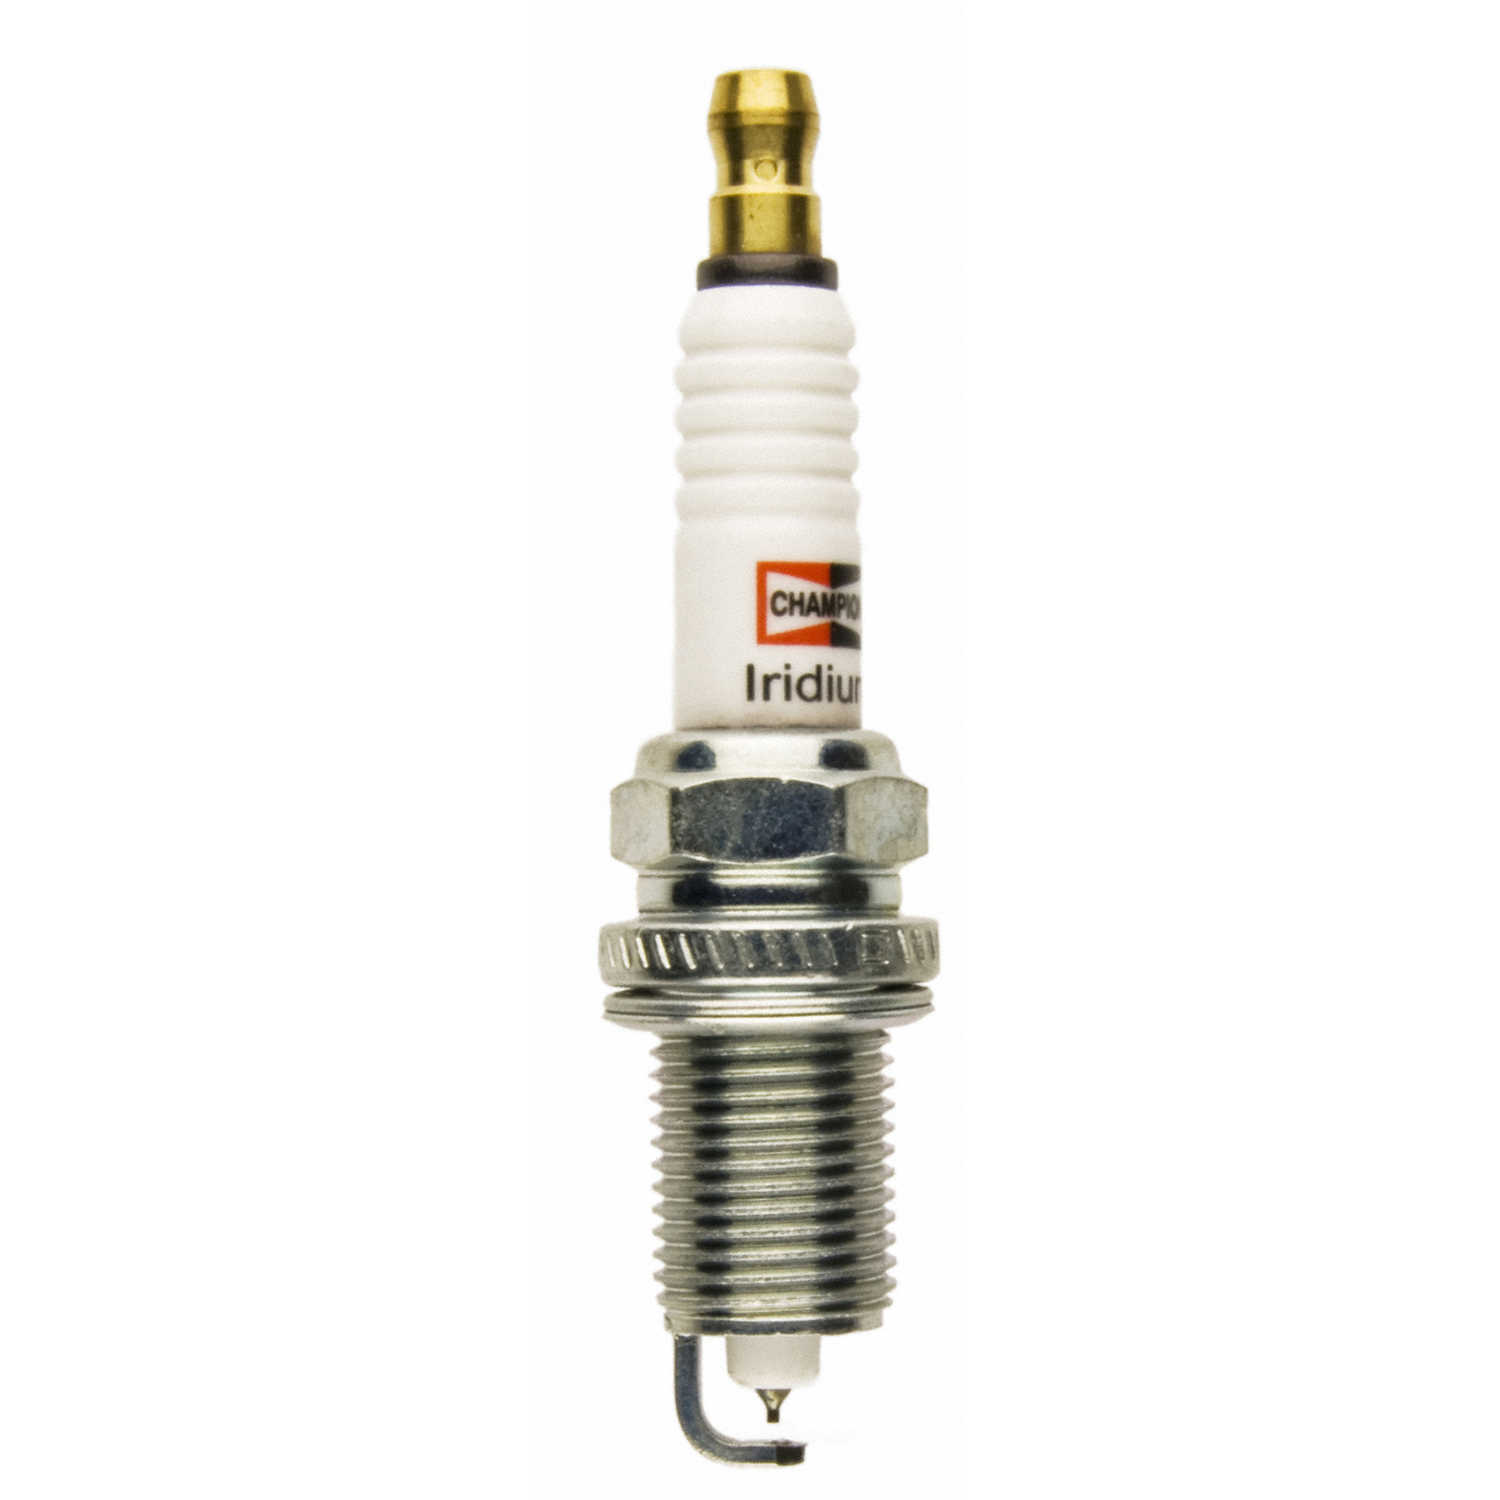 CHAMPION SPARK PLUGS - Iridium Spark Plug - CHA 9202